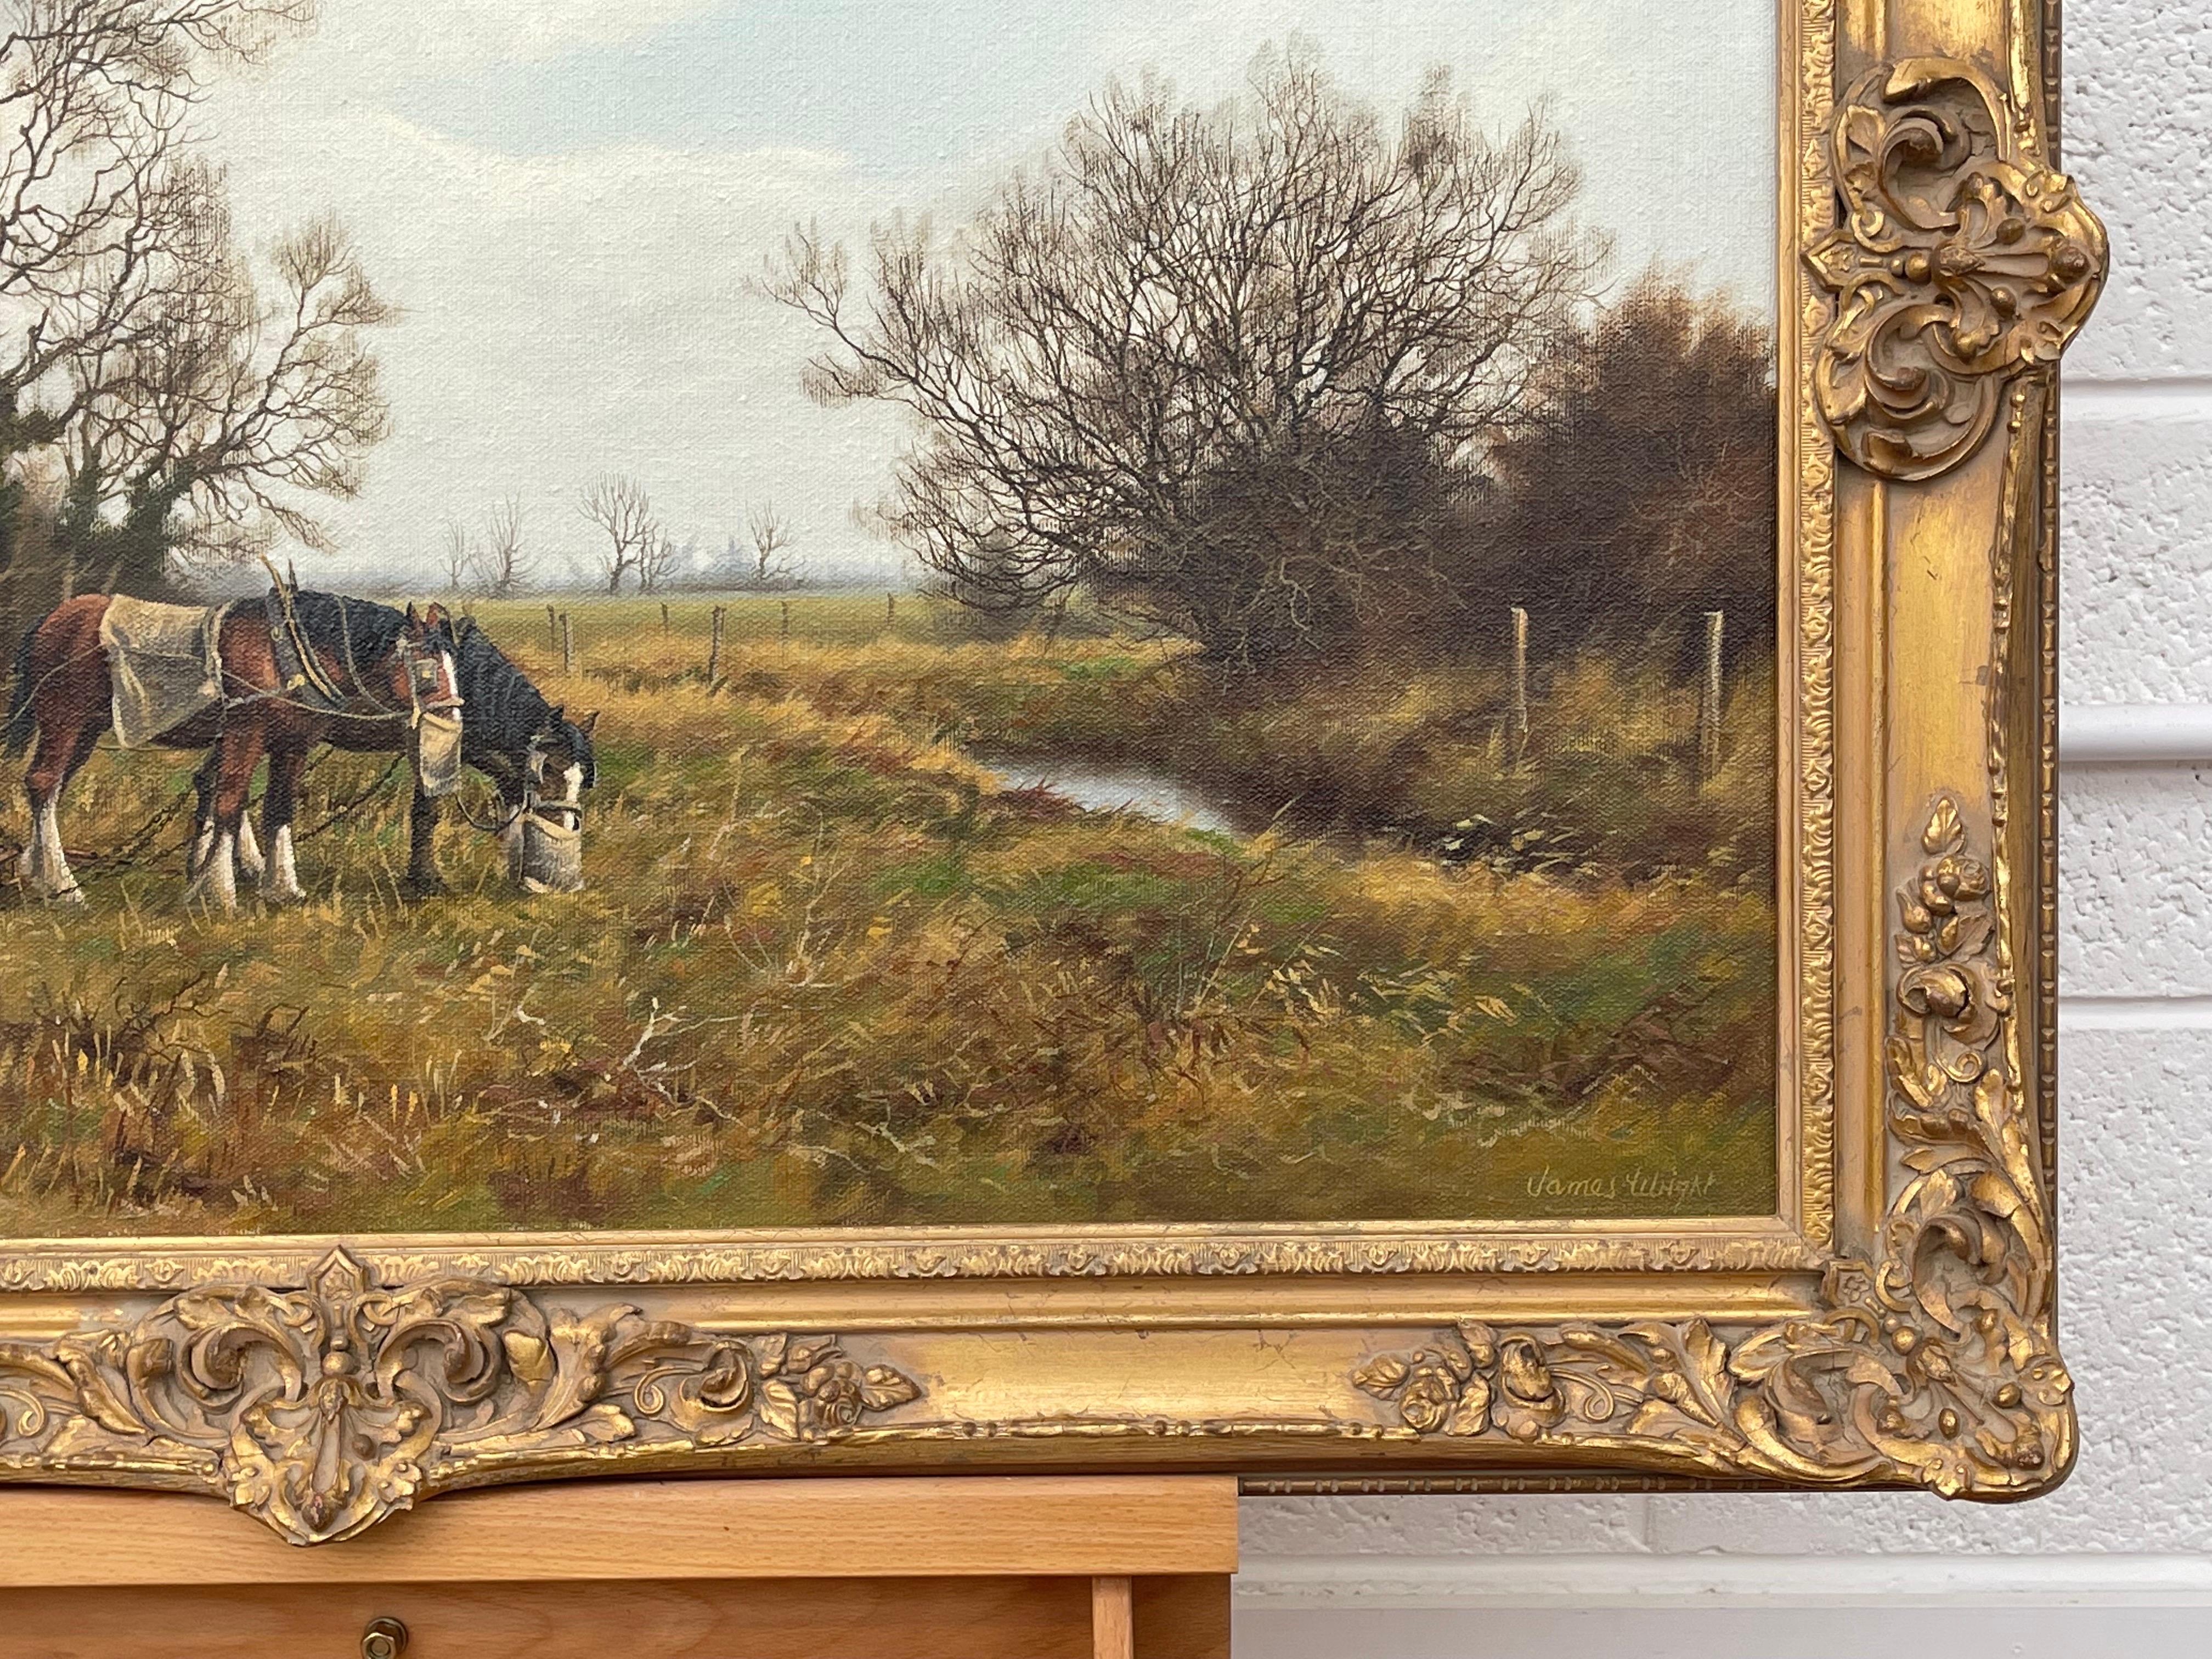 Peinture à l'huile traditionnelle de la campagne anglaise avec chevaux et charrue par un artiste britannique moderne

L'œuvre d'art mesure 30 x 20 pouces
Le cadre mesure 36 x 26 pouces 

James Wright est né à Peterborough en 1935 et vit aujourd'hui